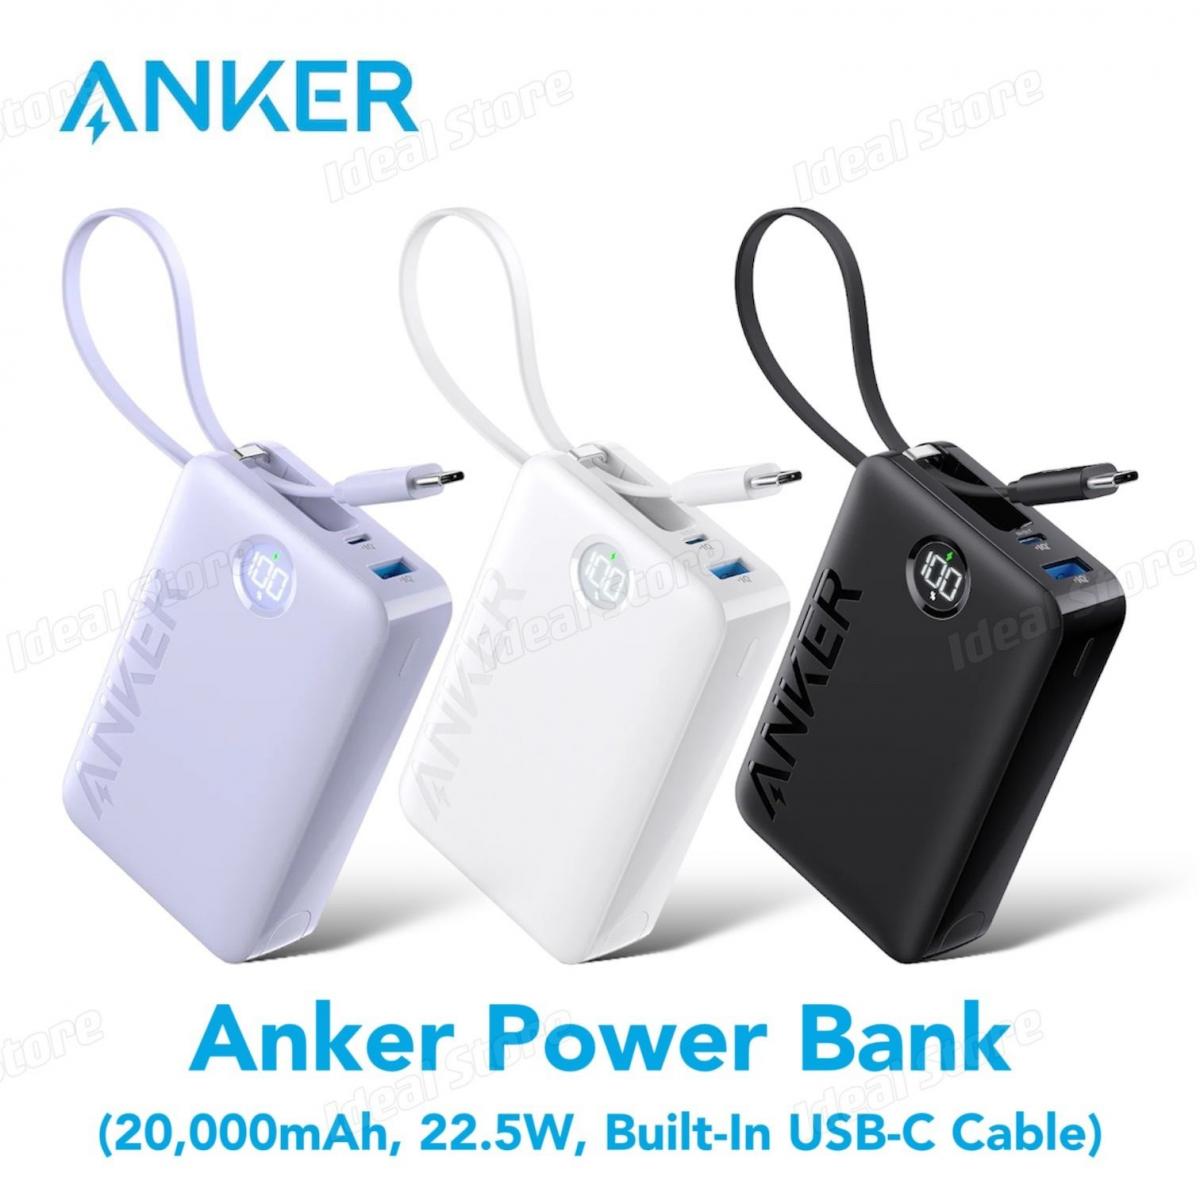 Power Bank Essence 20000, Chargeur portable de 20000mAh